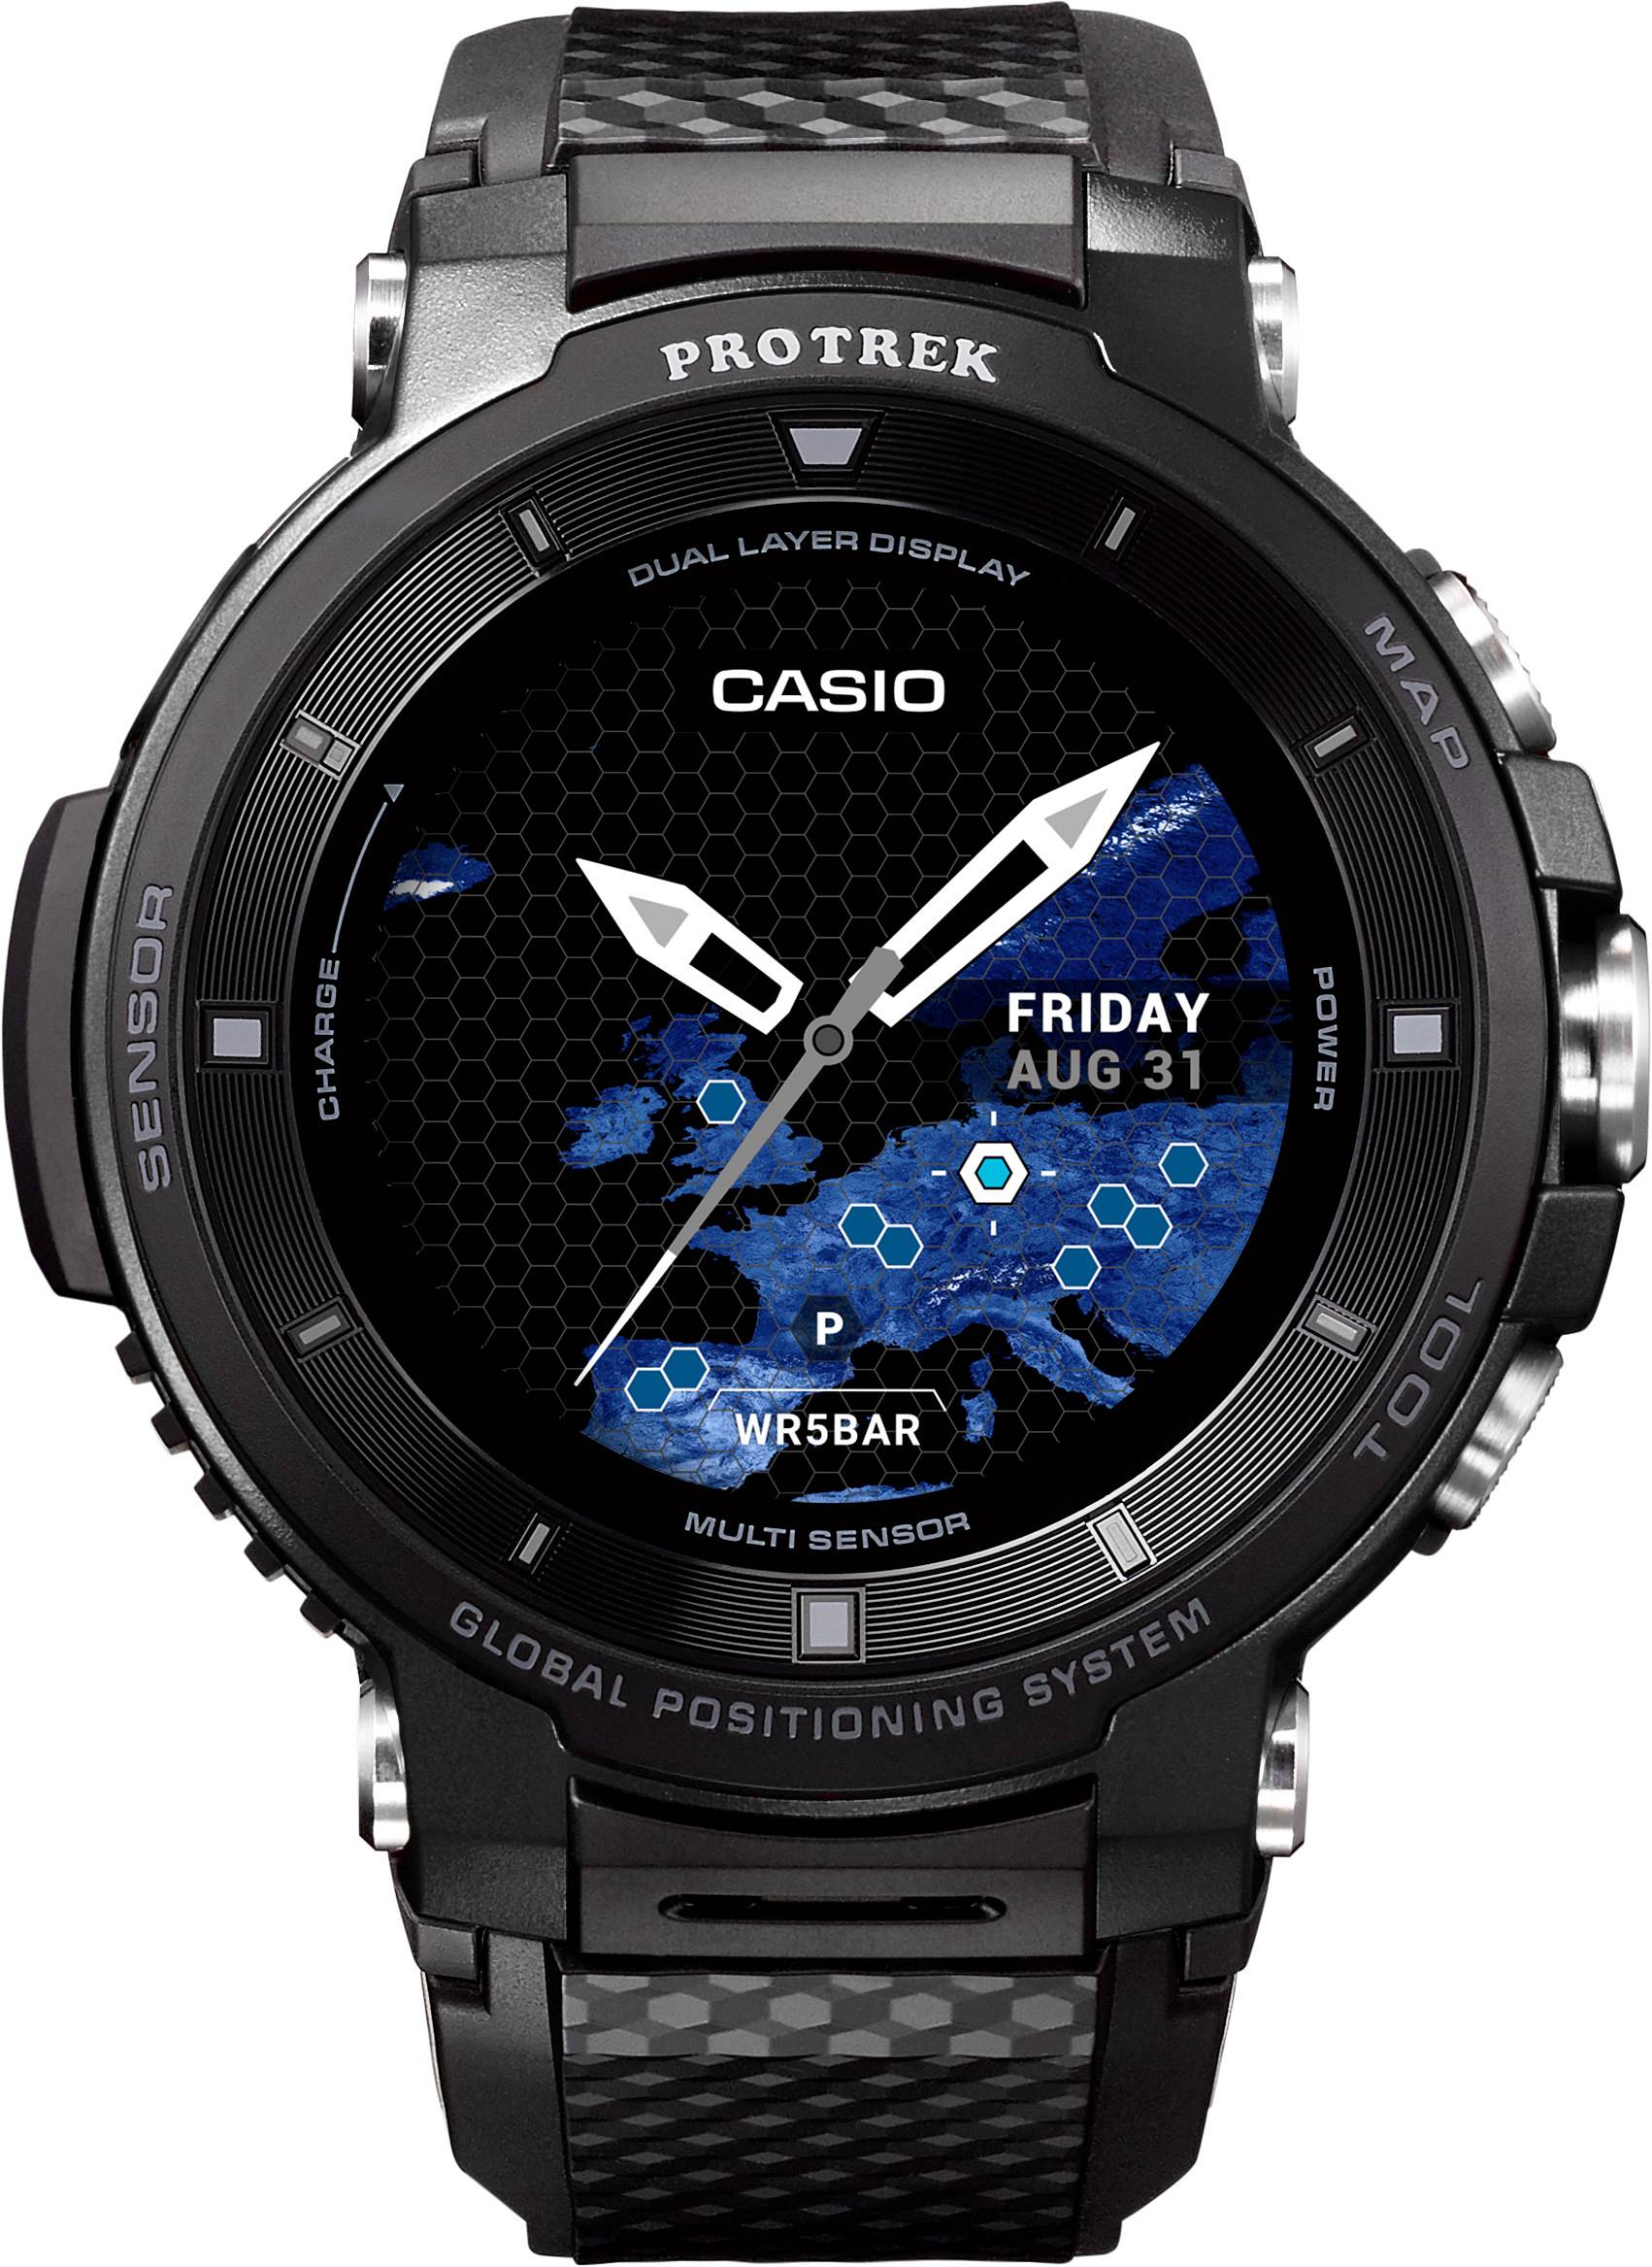 Casio WSD-F30-BKAAE - Zegarek PROTREK • Zegarownia.pl